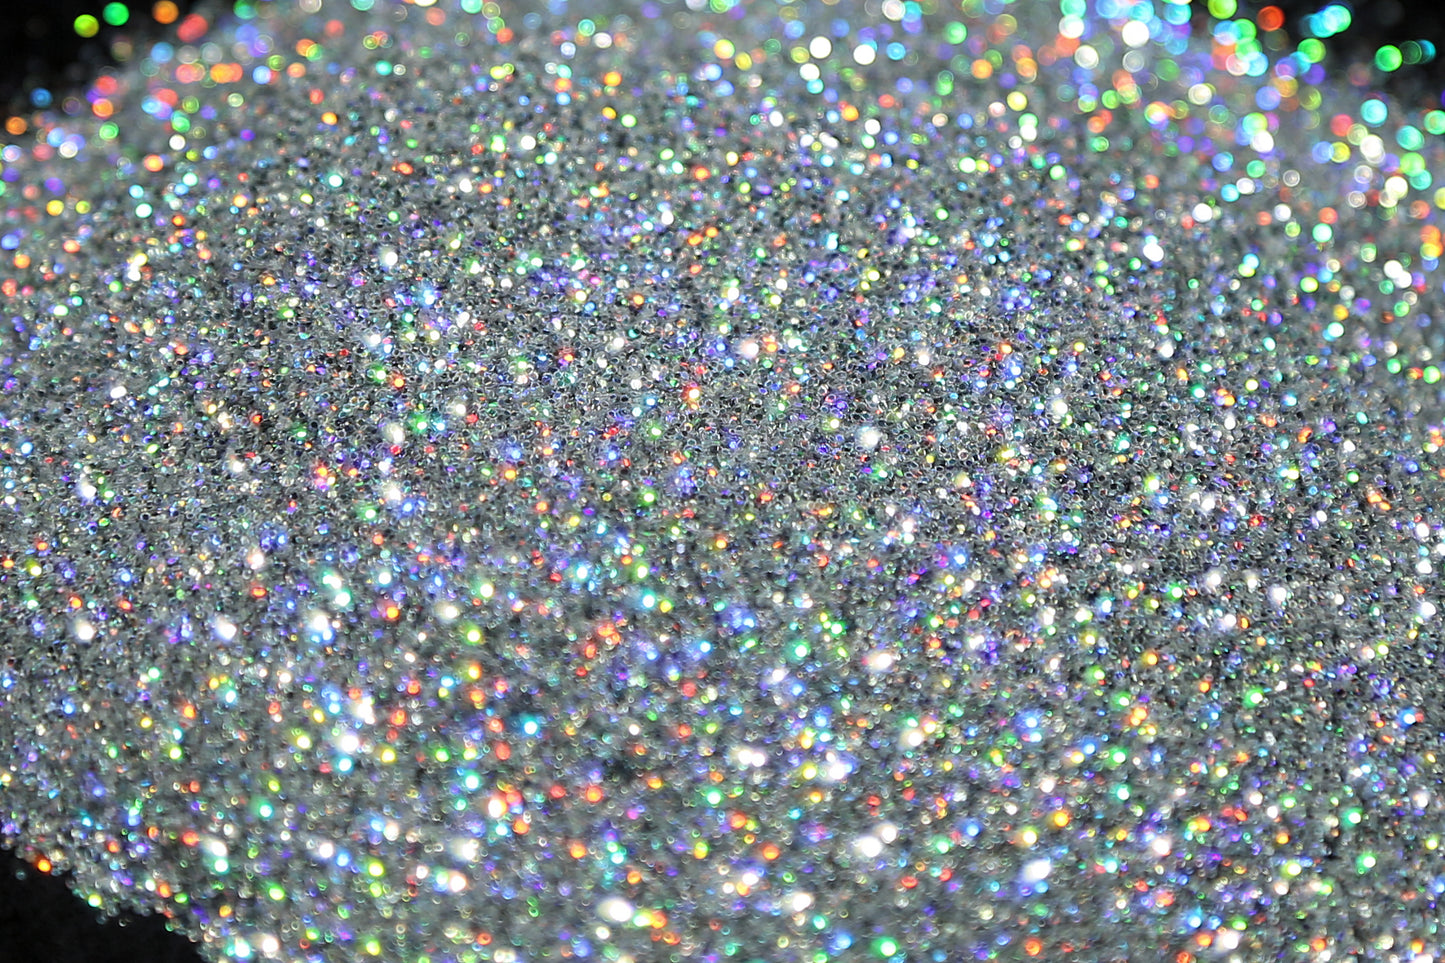 Bling - Ultrafine Glitter